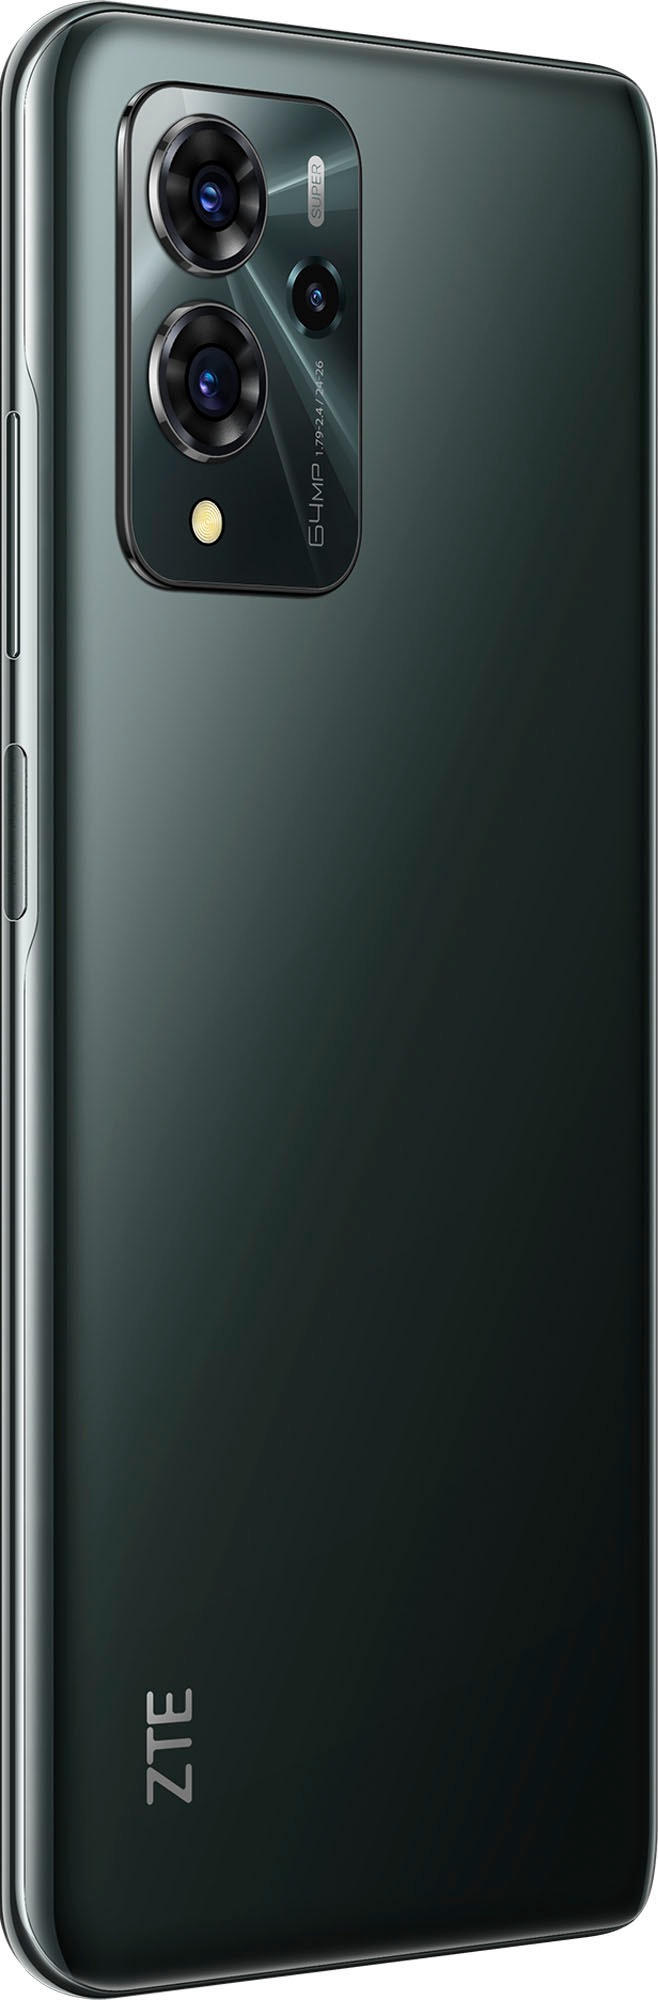 ZTE Smartphone »Blade V40 pro«, Dark Green, 16,94 cm/6,67 Zoll, 128 GB Speicherplatz, 64 MP Kamera